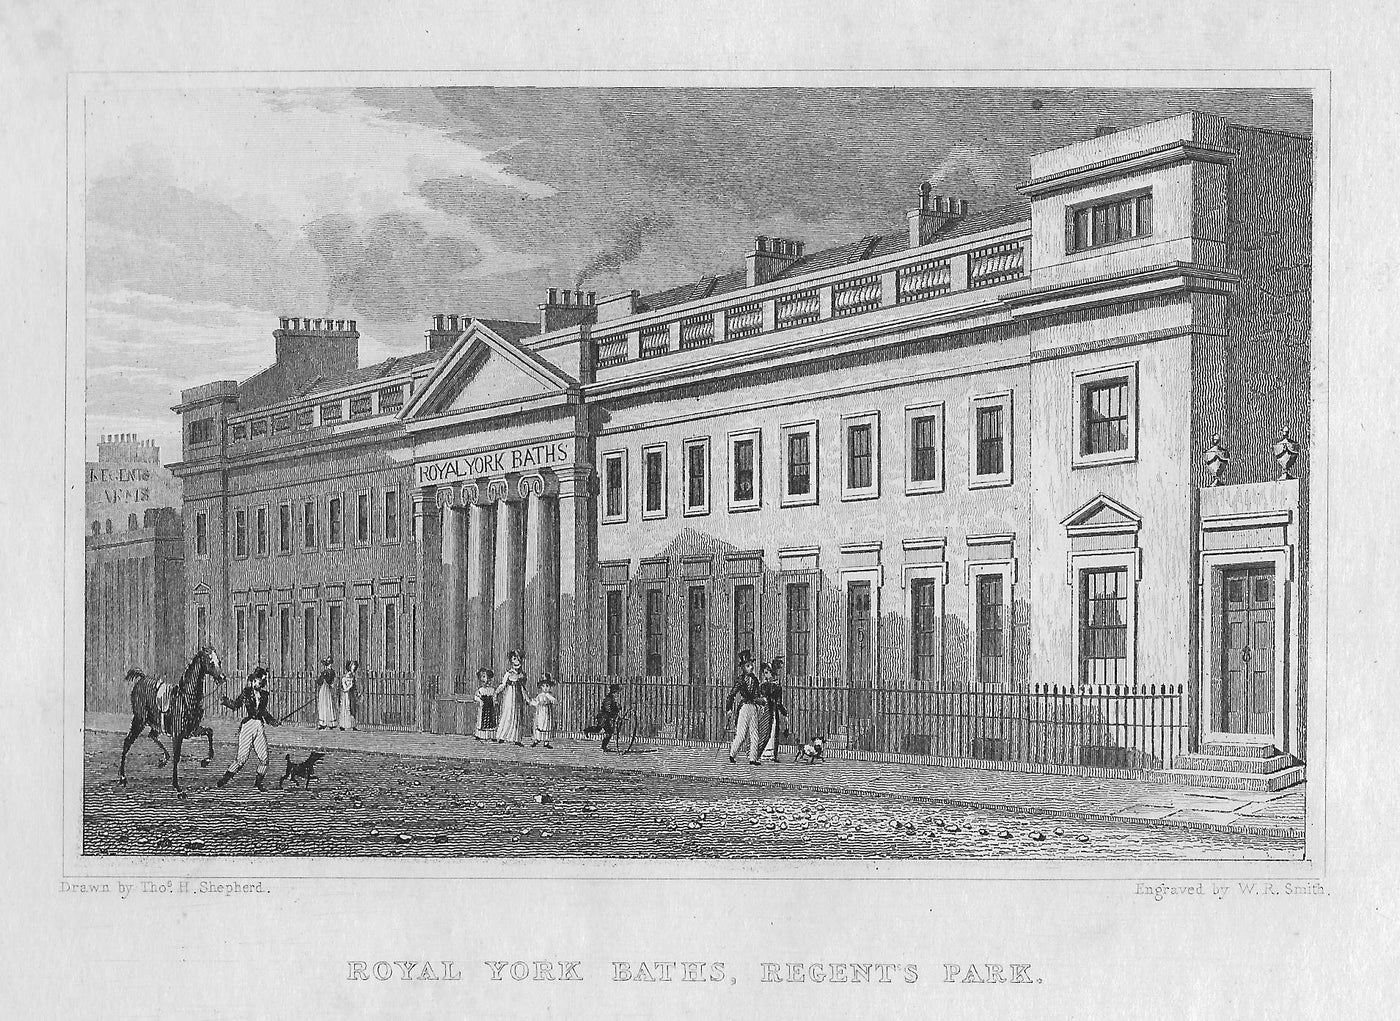 Royal York Baths, Regent's Park, London antique print 1830